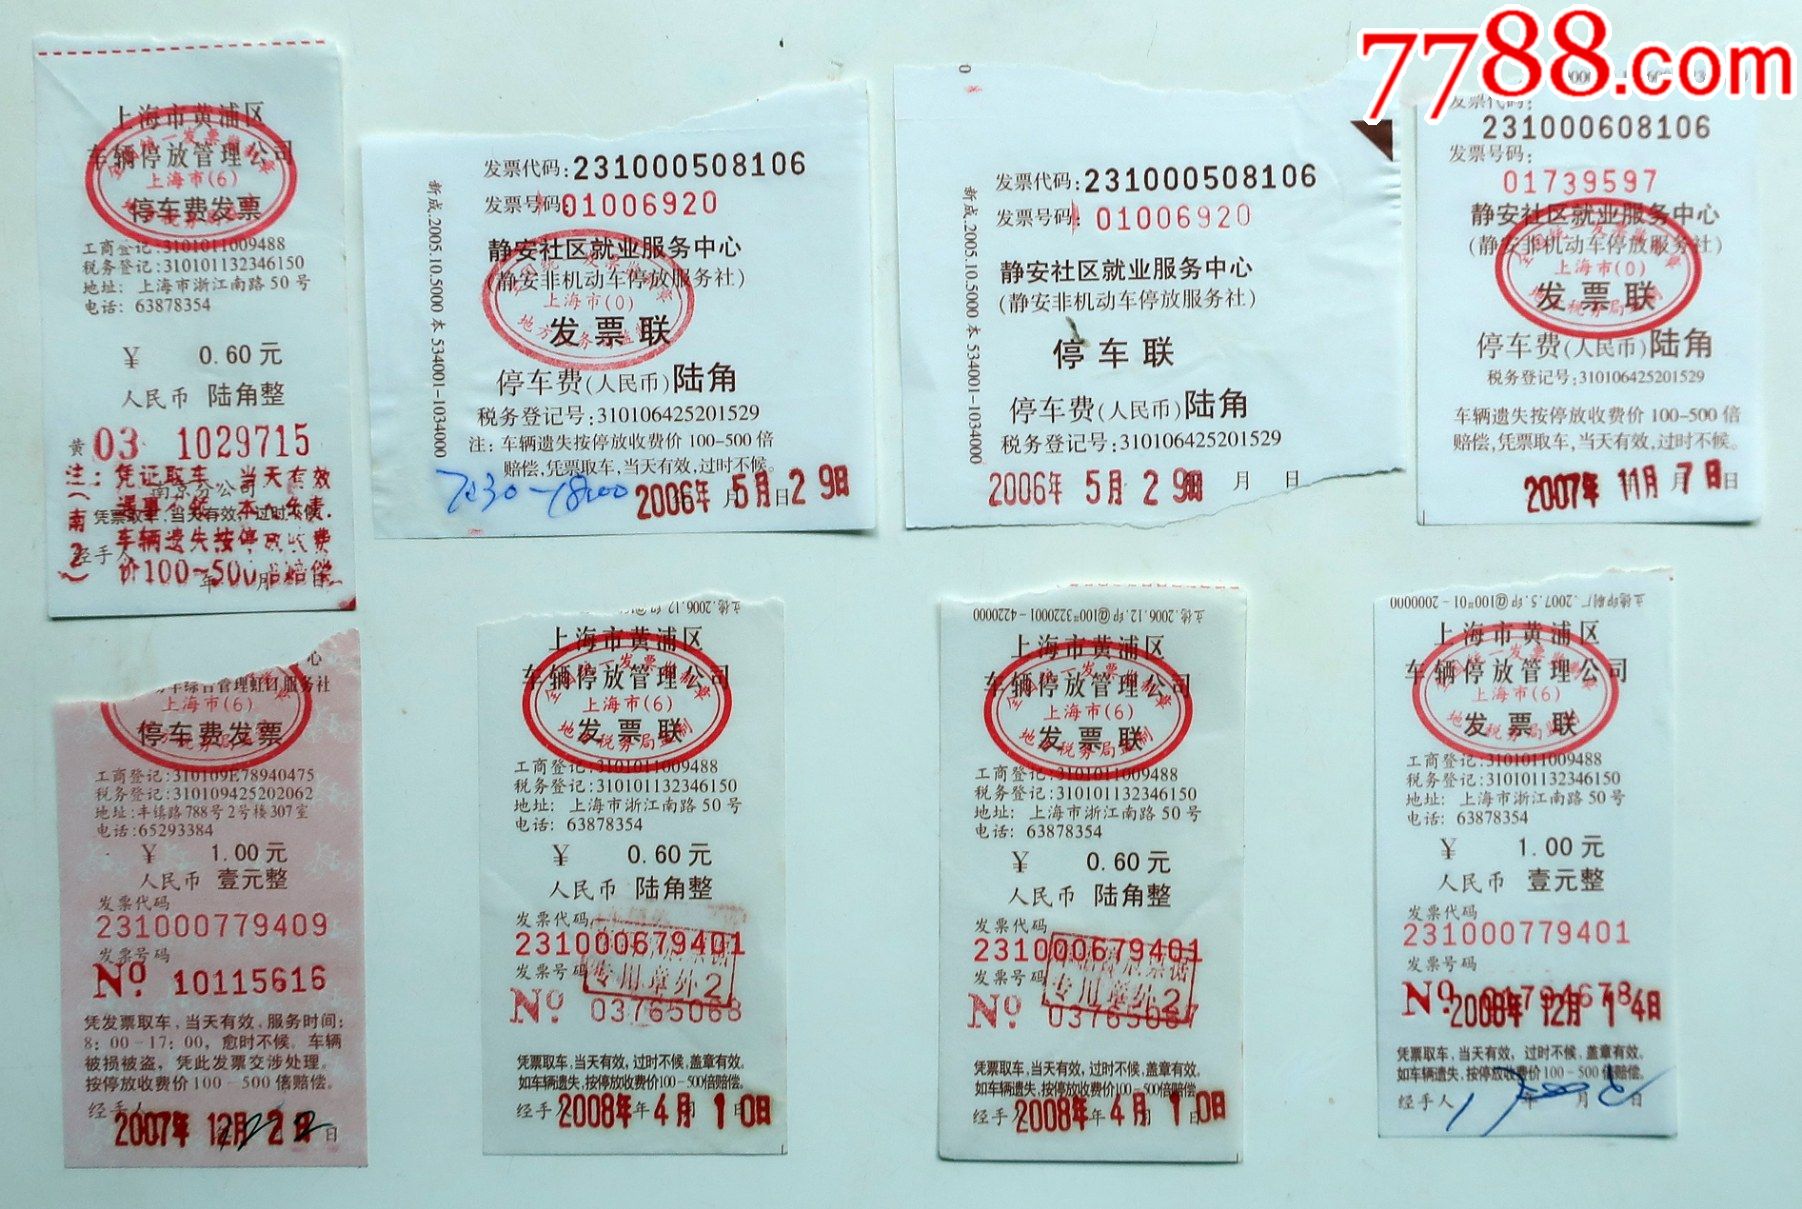 上海自行车停车费(陆角,壹圆)发票联及停车联共8枚